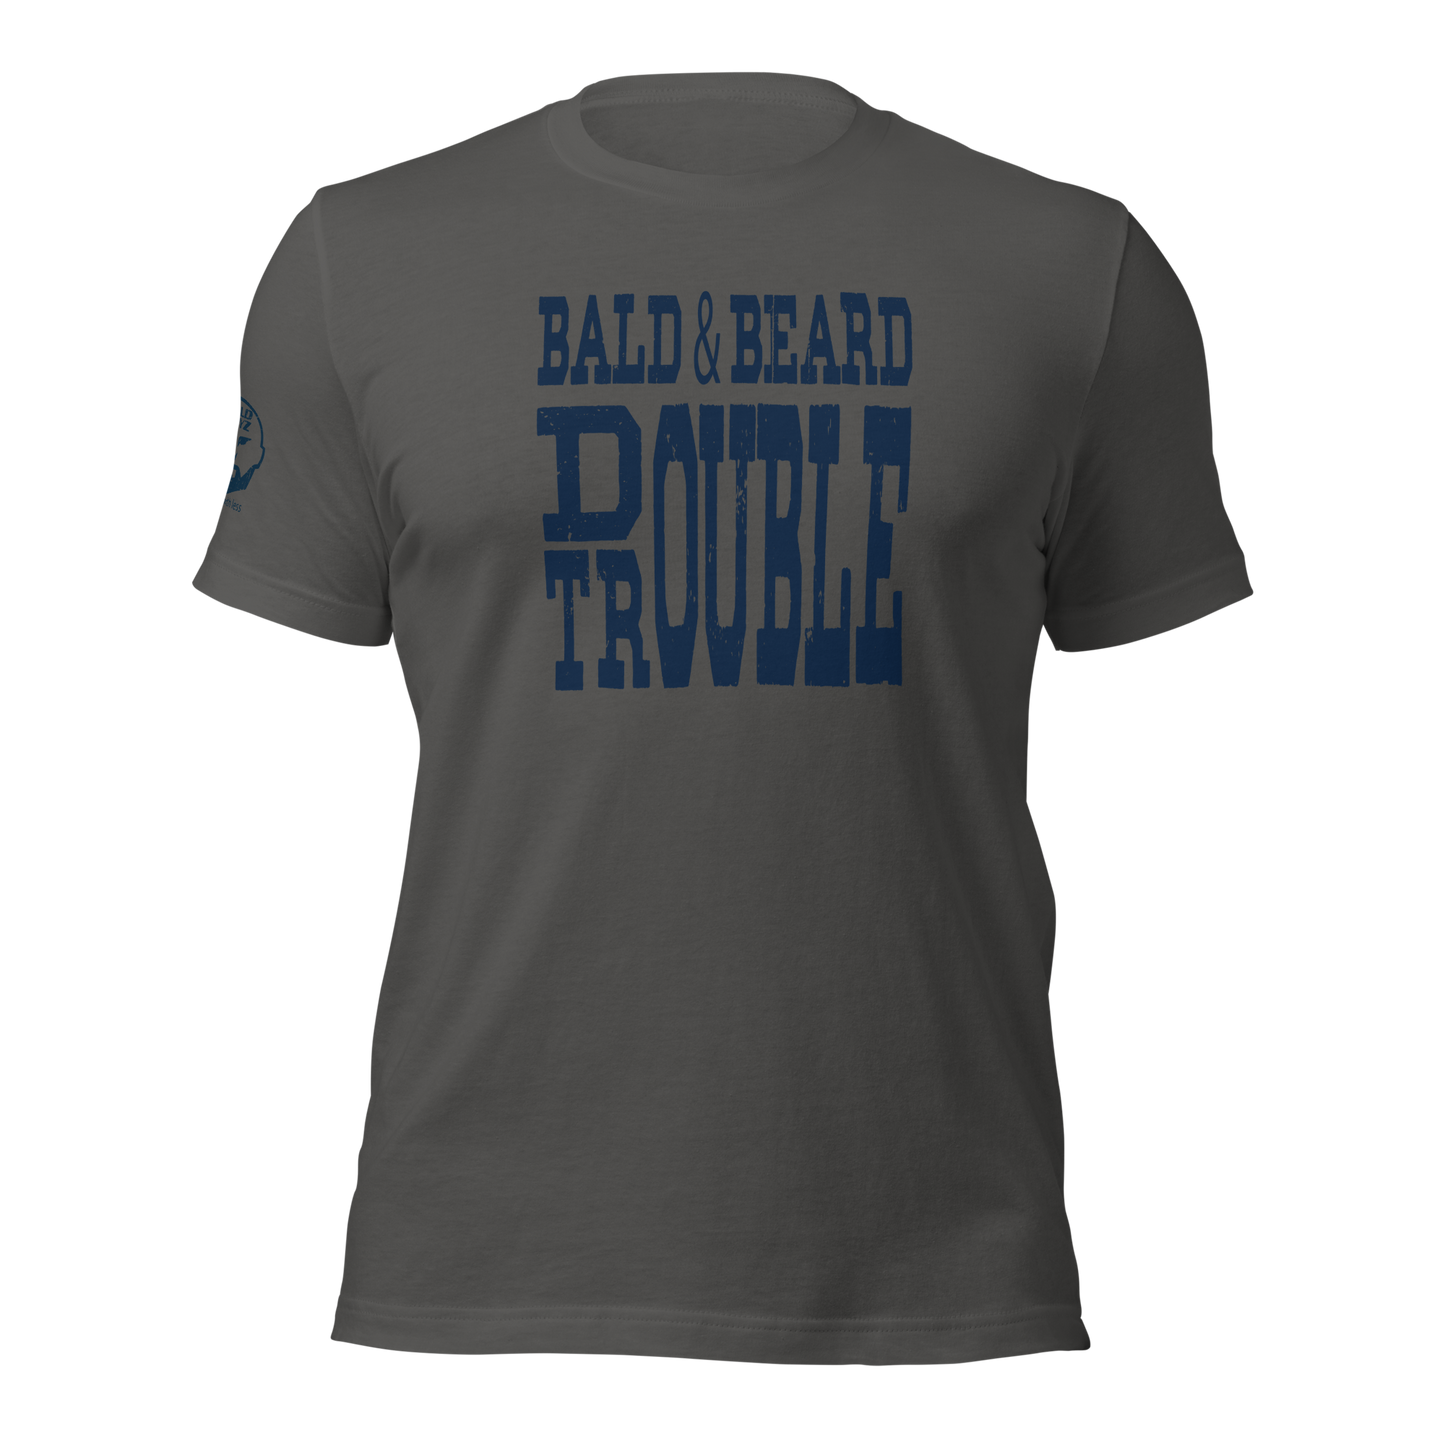 Bald & Beard Double Trouble t-shirt